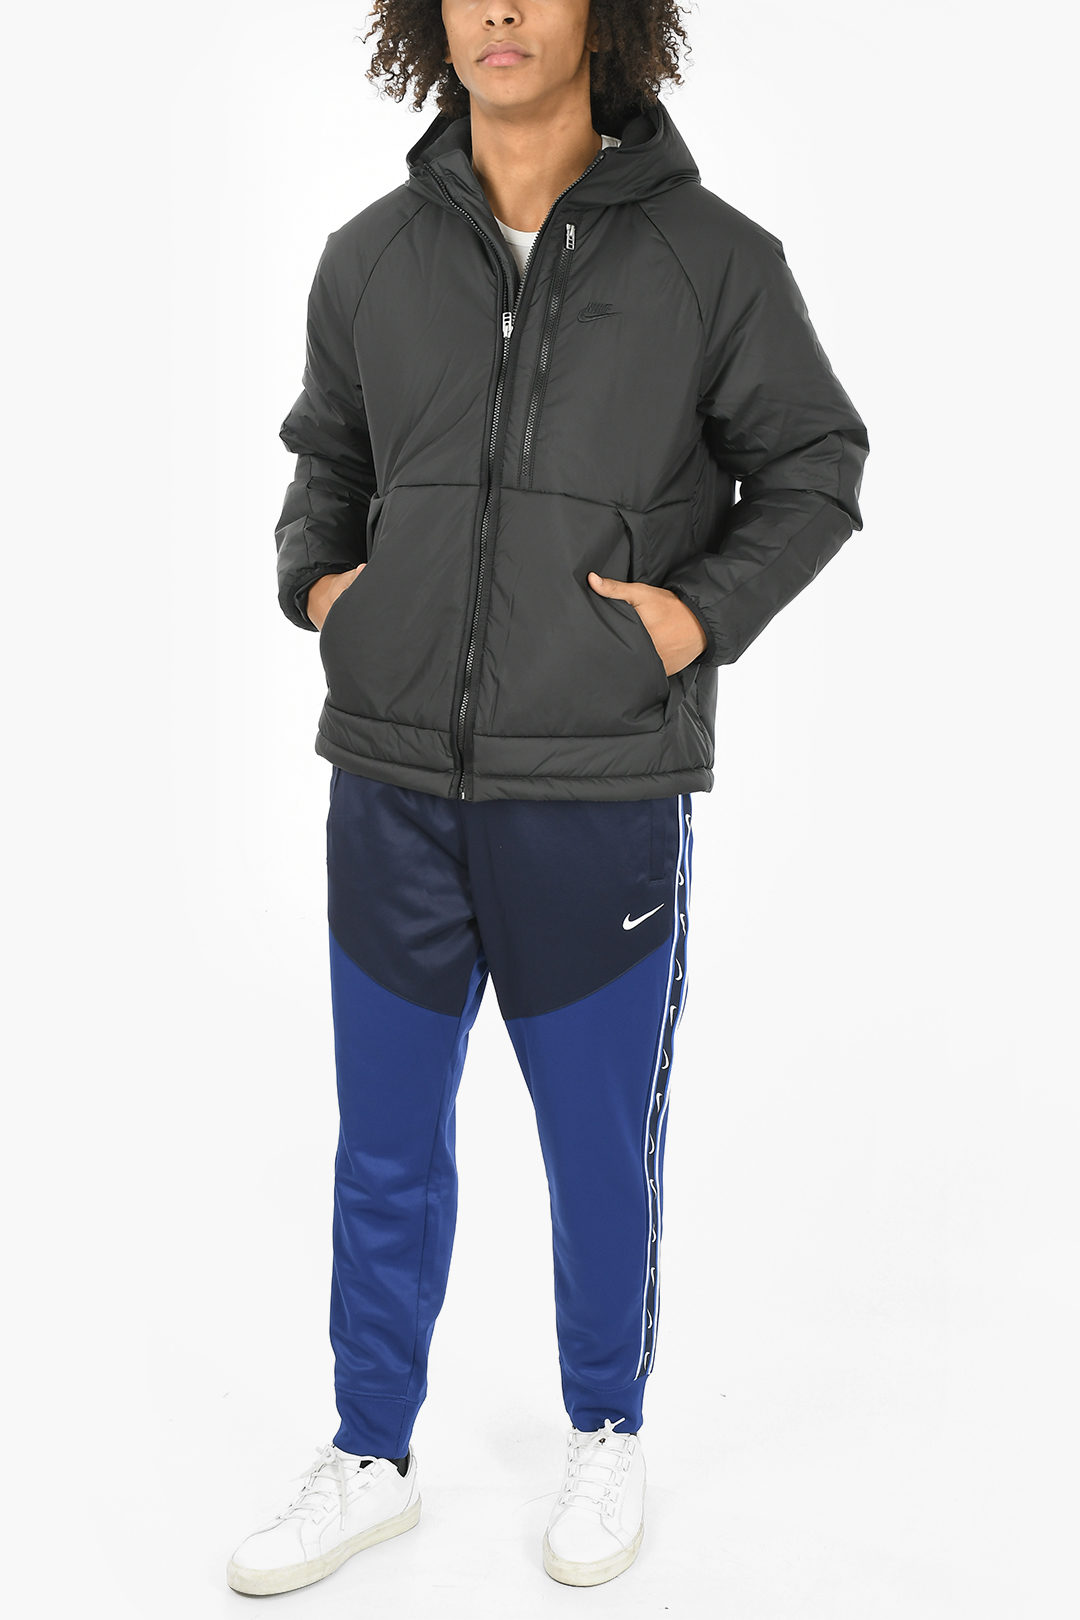 Nike Fleece 2 Pockets HD men - Glamood Outlet